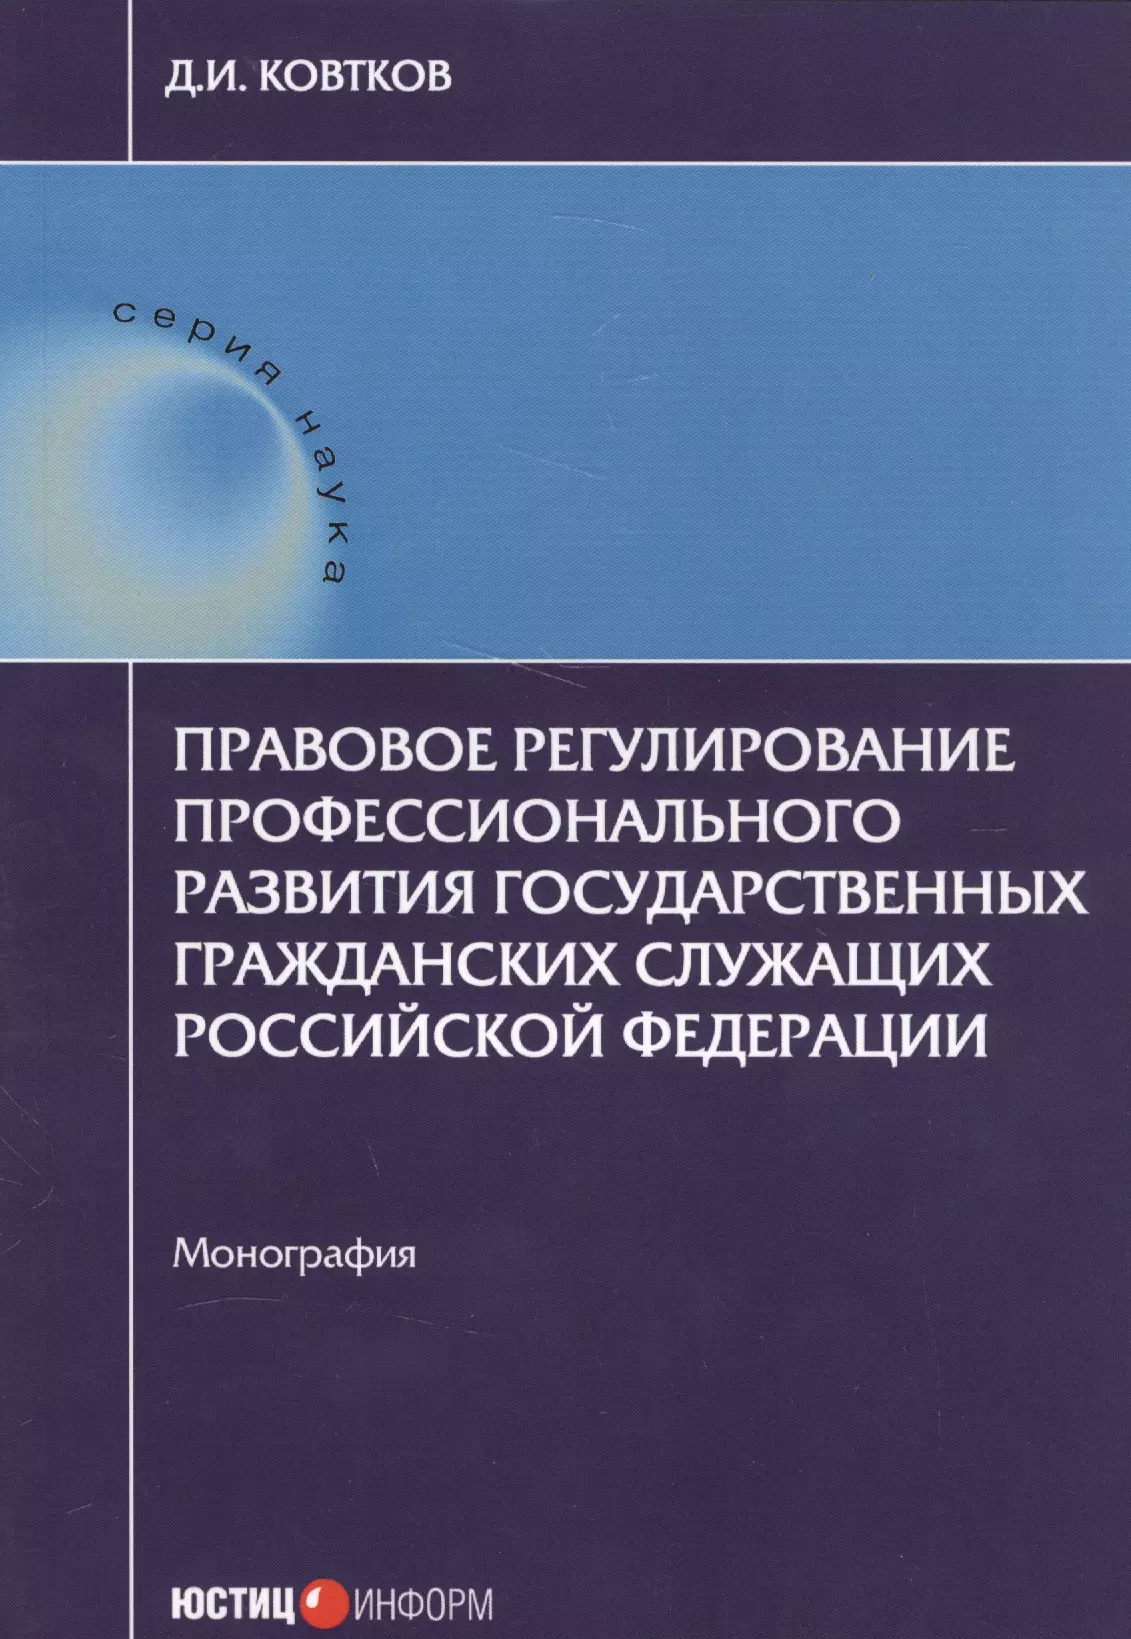 Правовое регулирование профессионального развития государственных гражданских служащих РФ: монографи